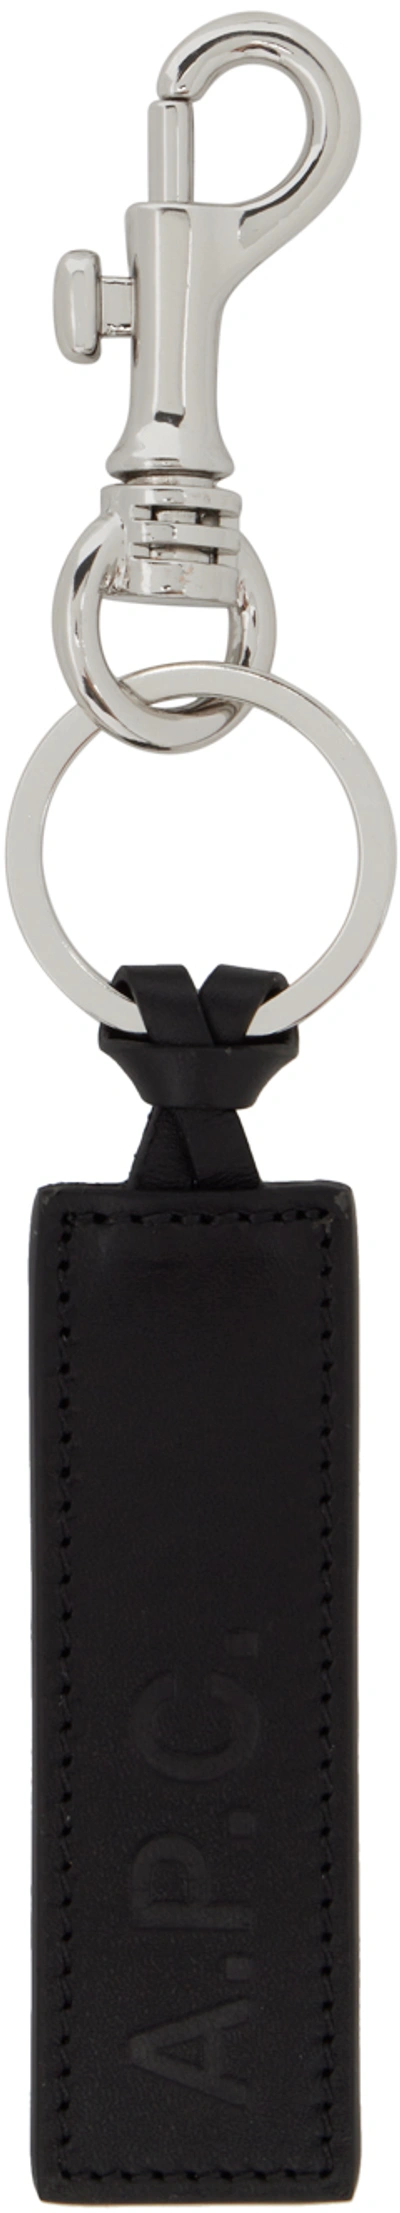 Shop Apc Black Logo Keychain In Lzz Black